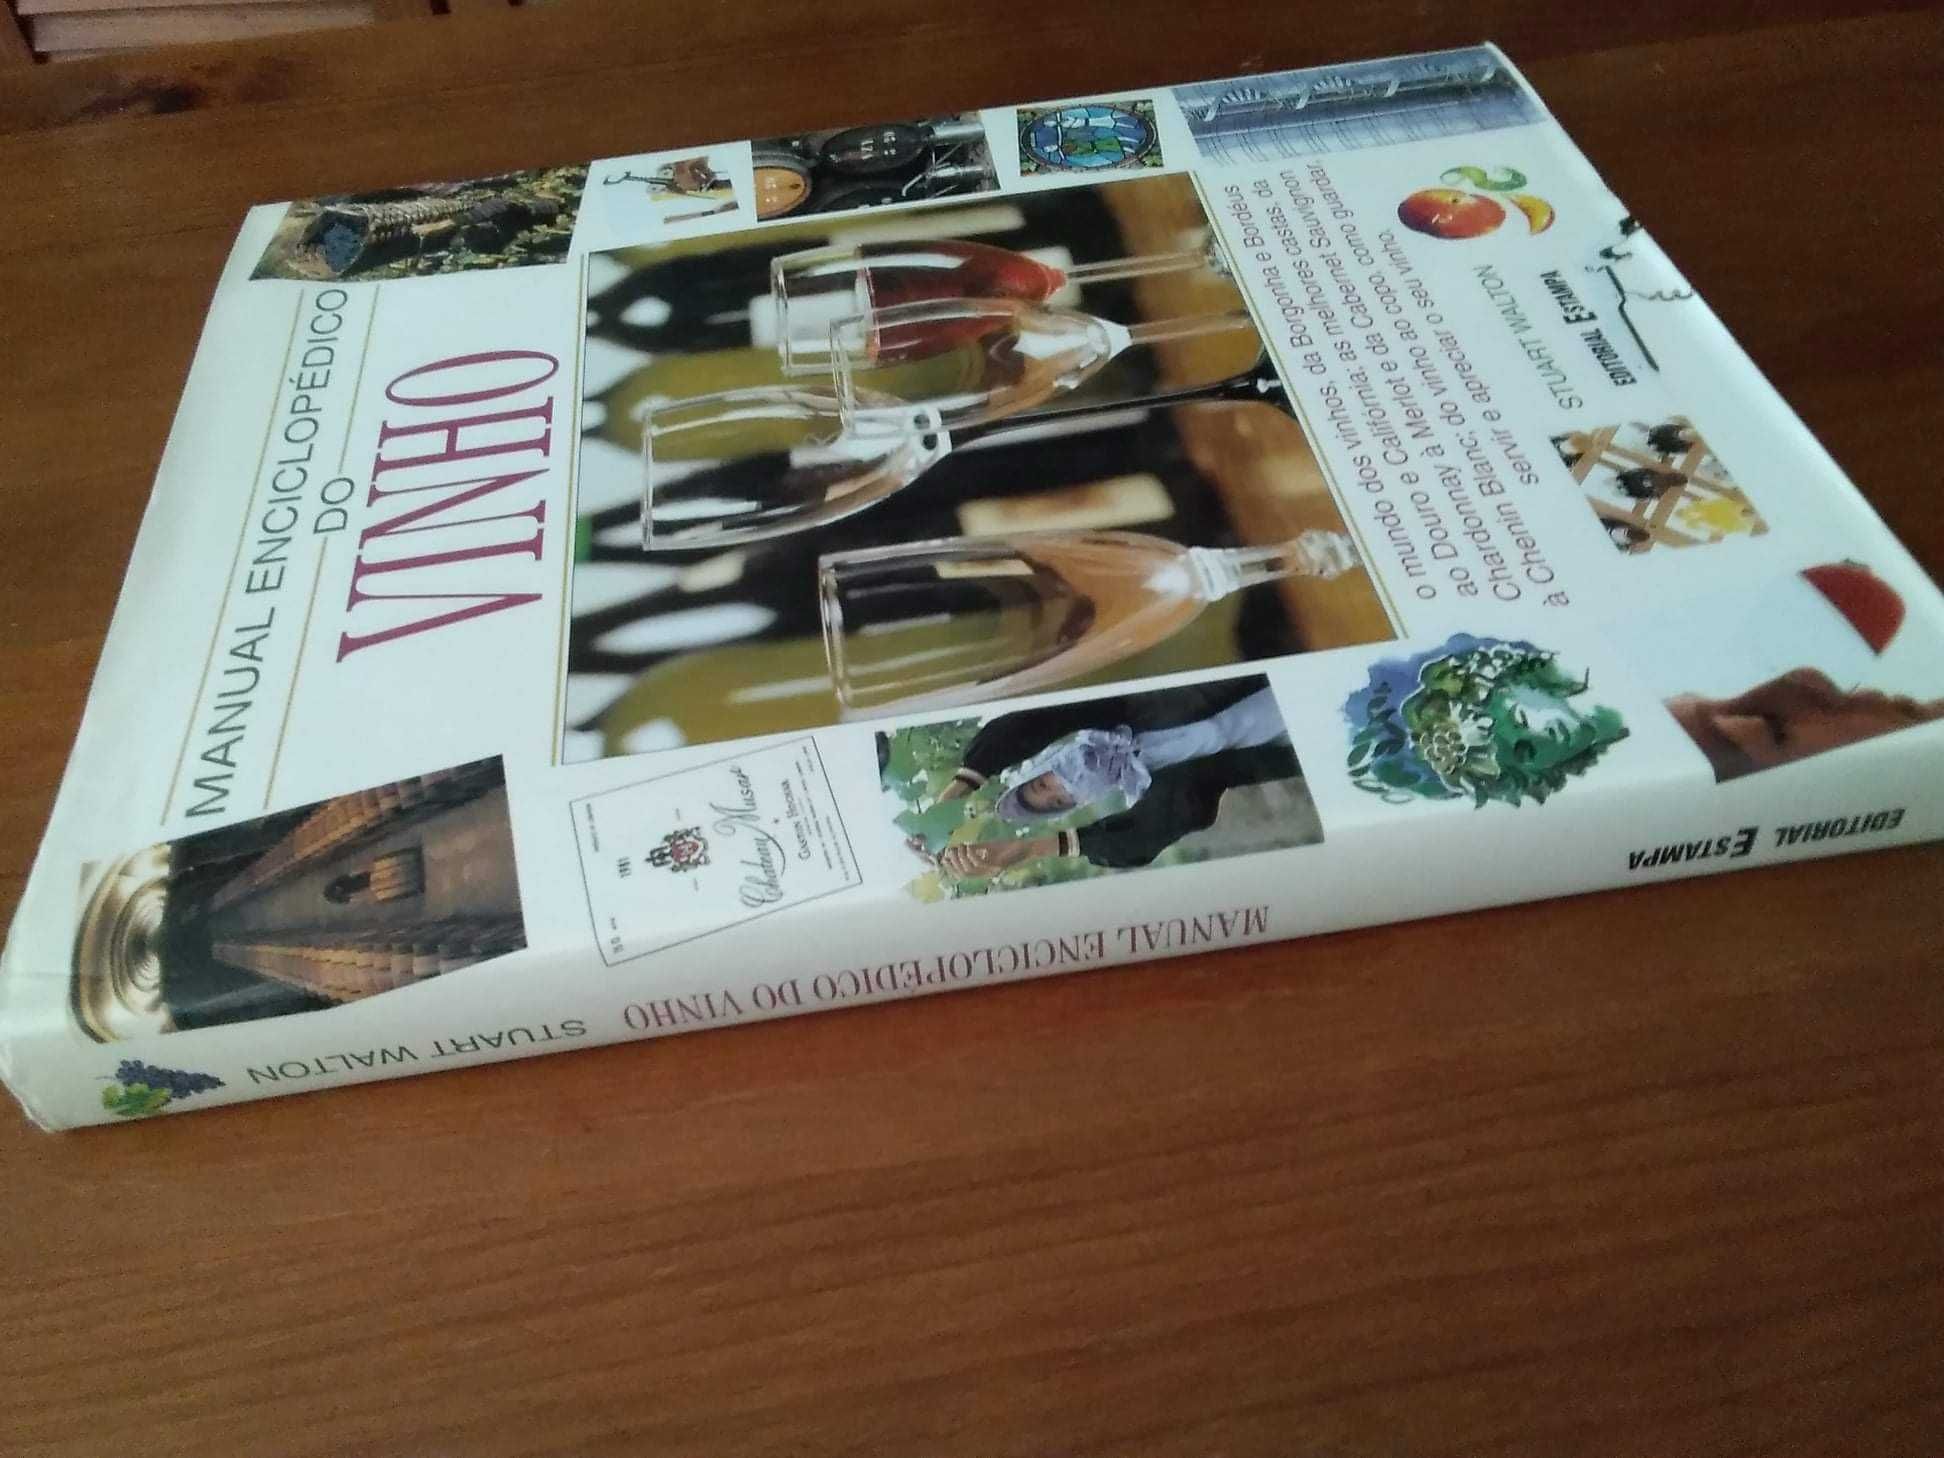 Manual Enciclopédico do Vinho